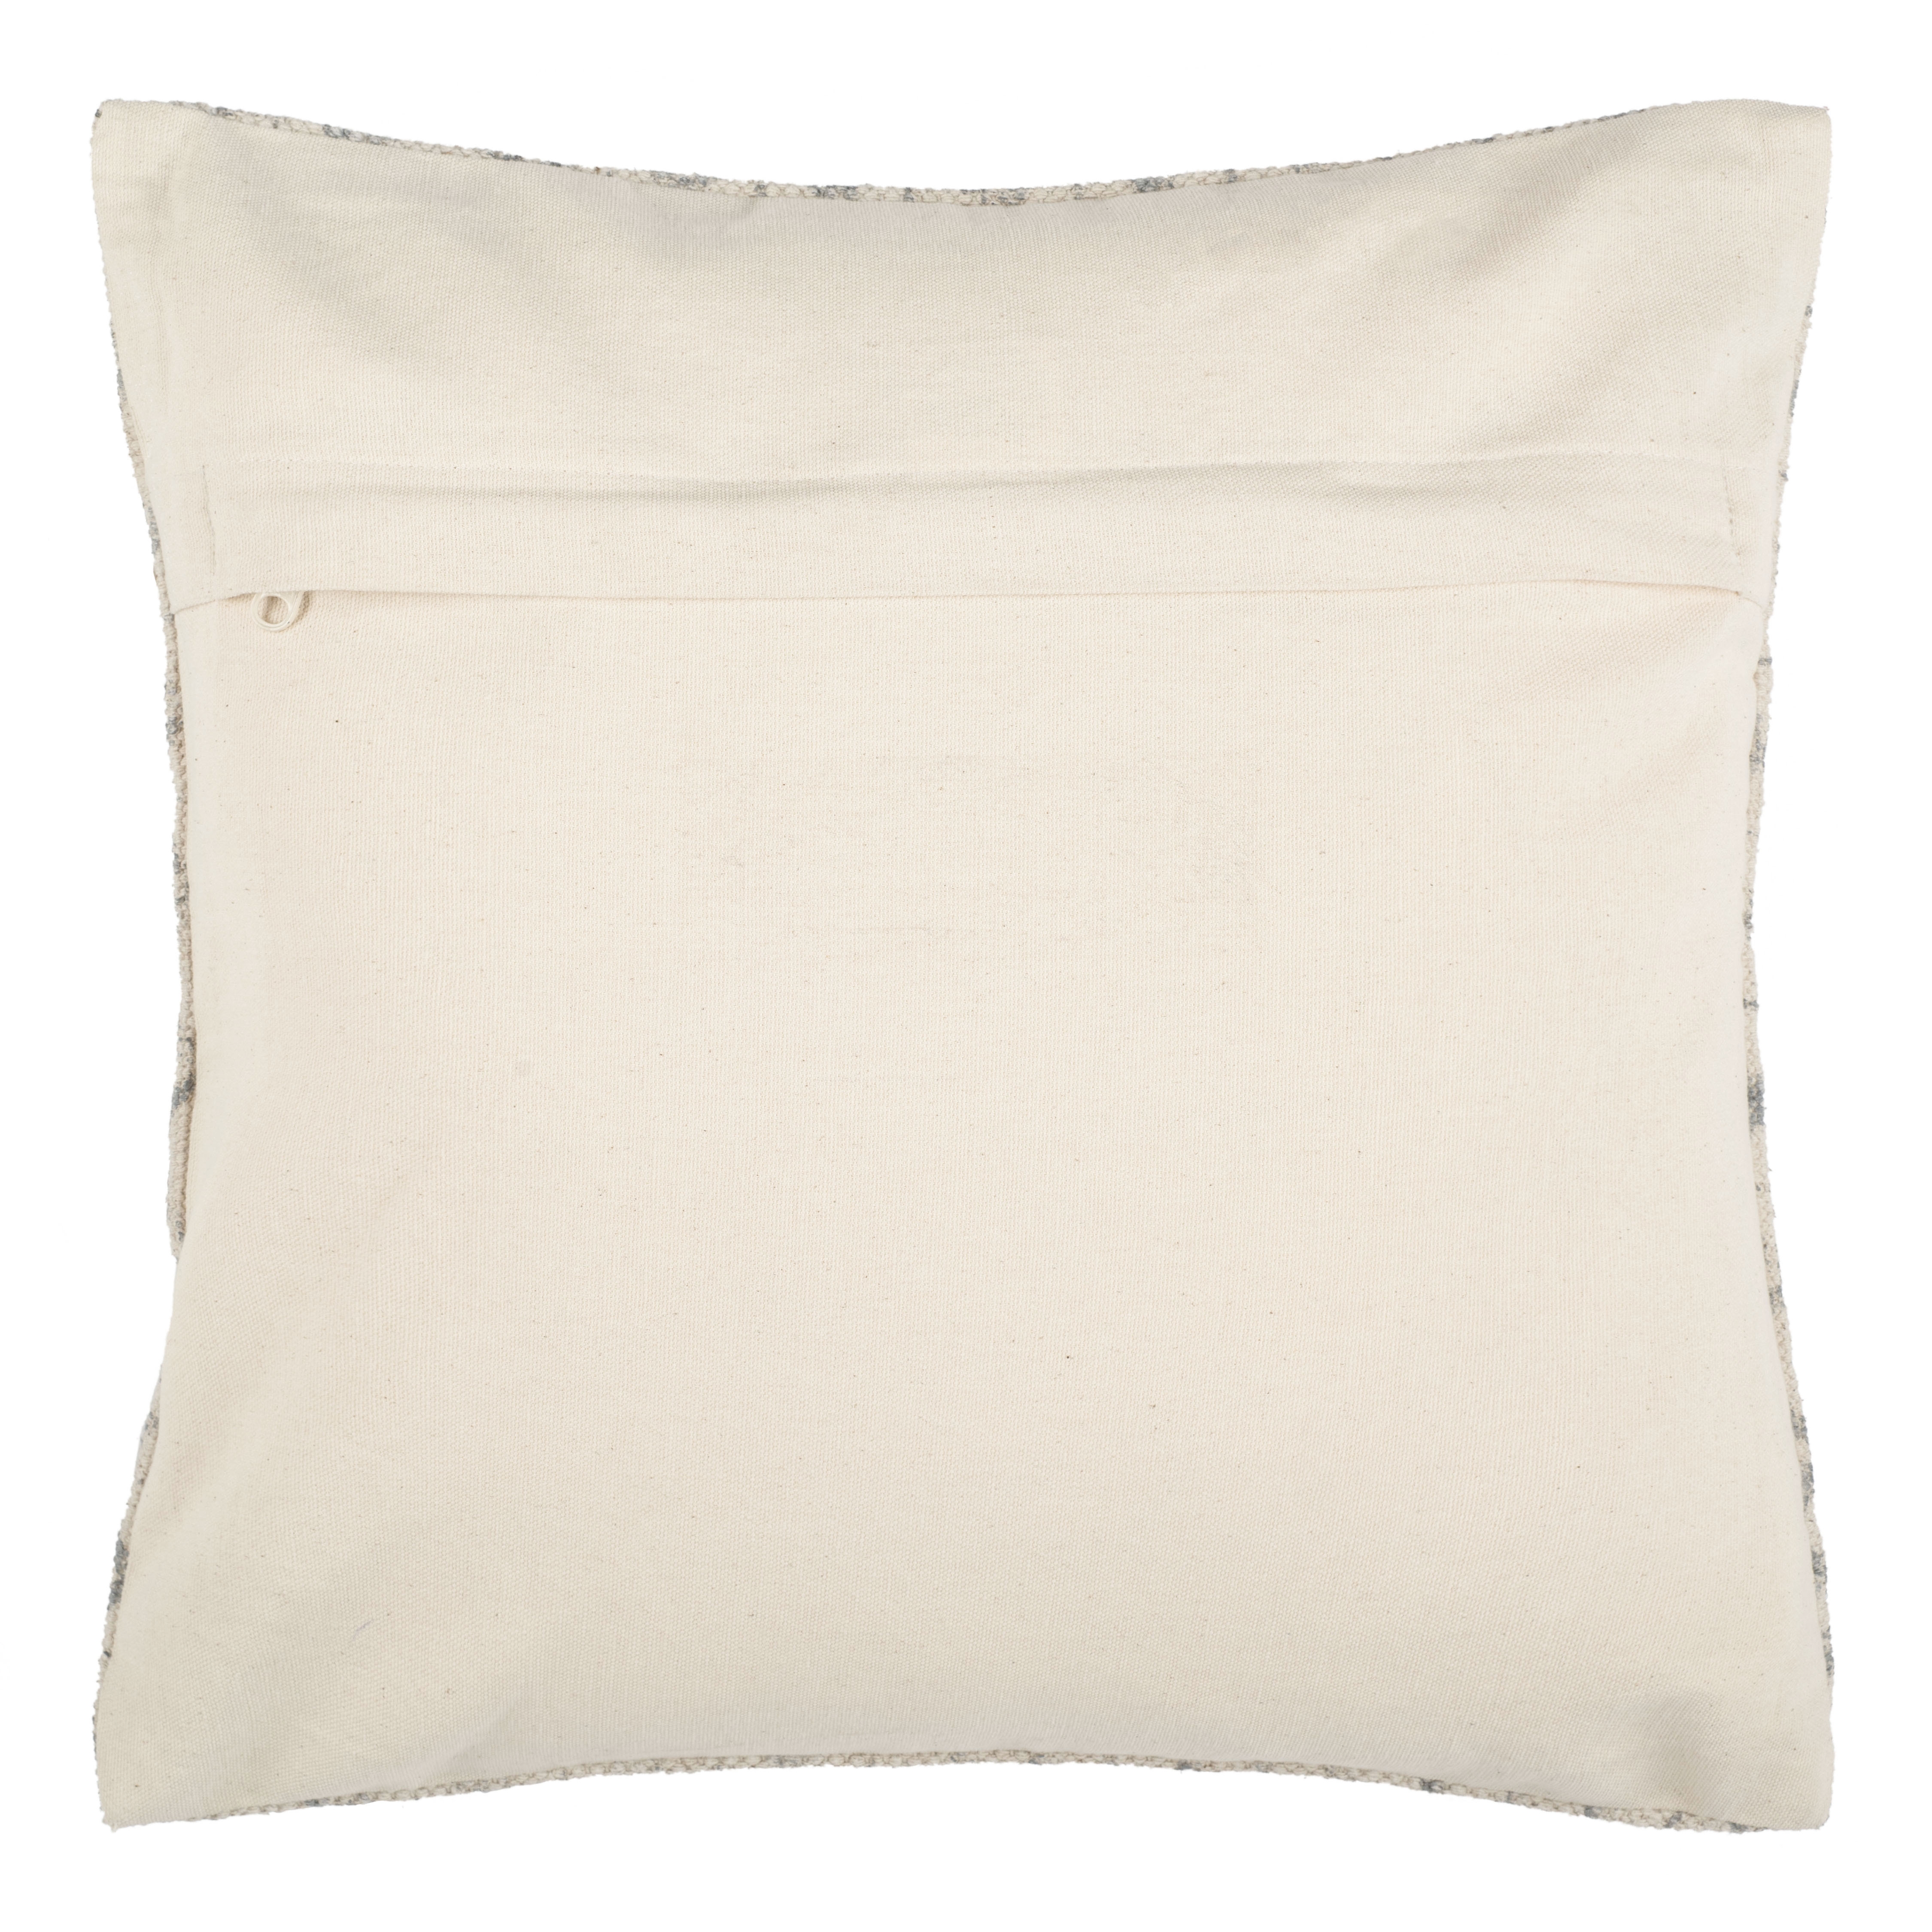 Juni Pillow, 18" x 18" - DNU - Image 2